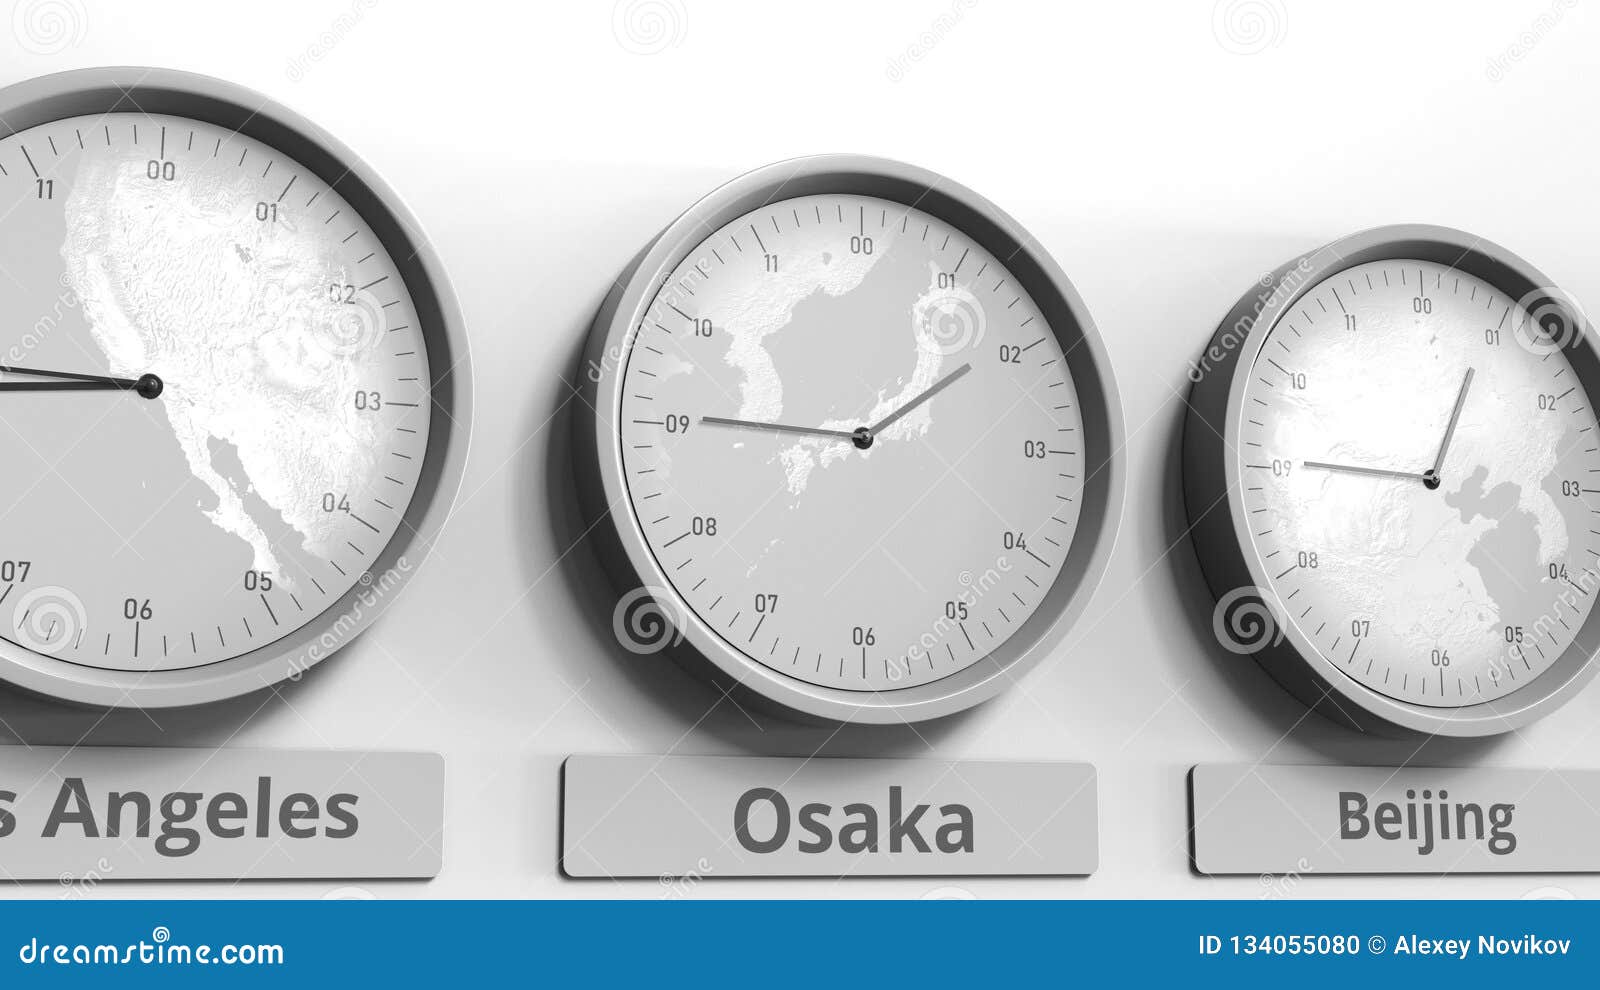 Испания время сейчас разница с москвой. "Часы", Осака, Япония. Местное время рисунок. Часы Сантьяго описание. Friends in different time Zones.